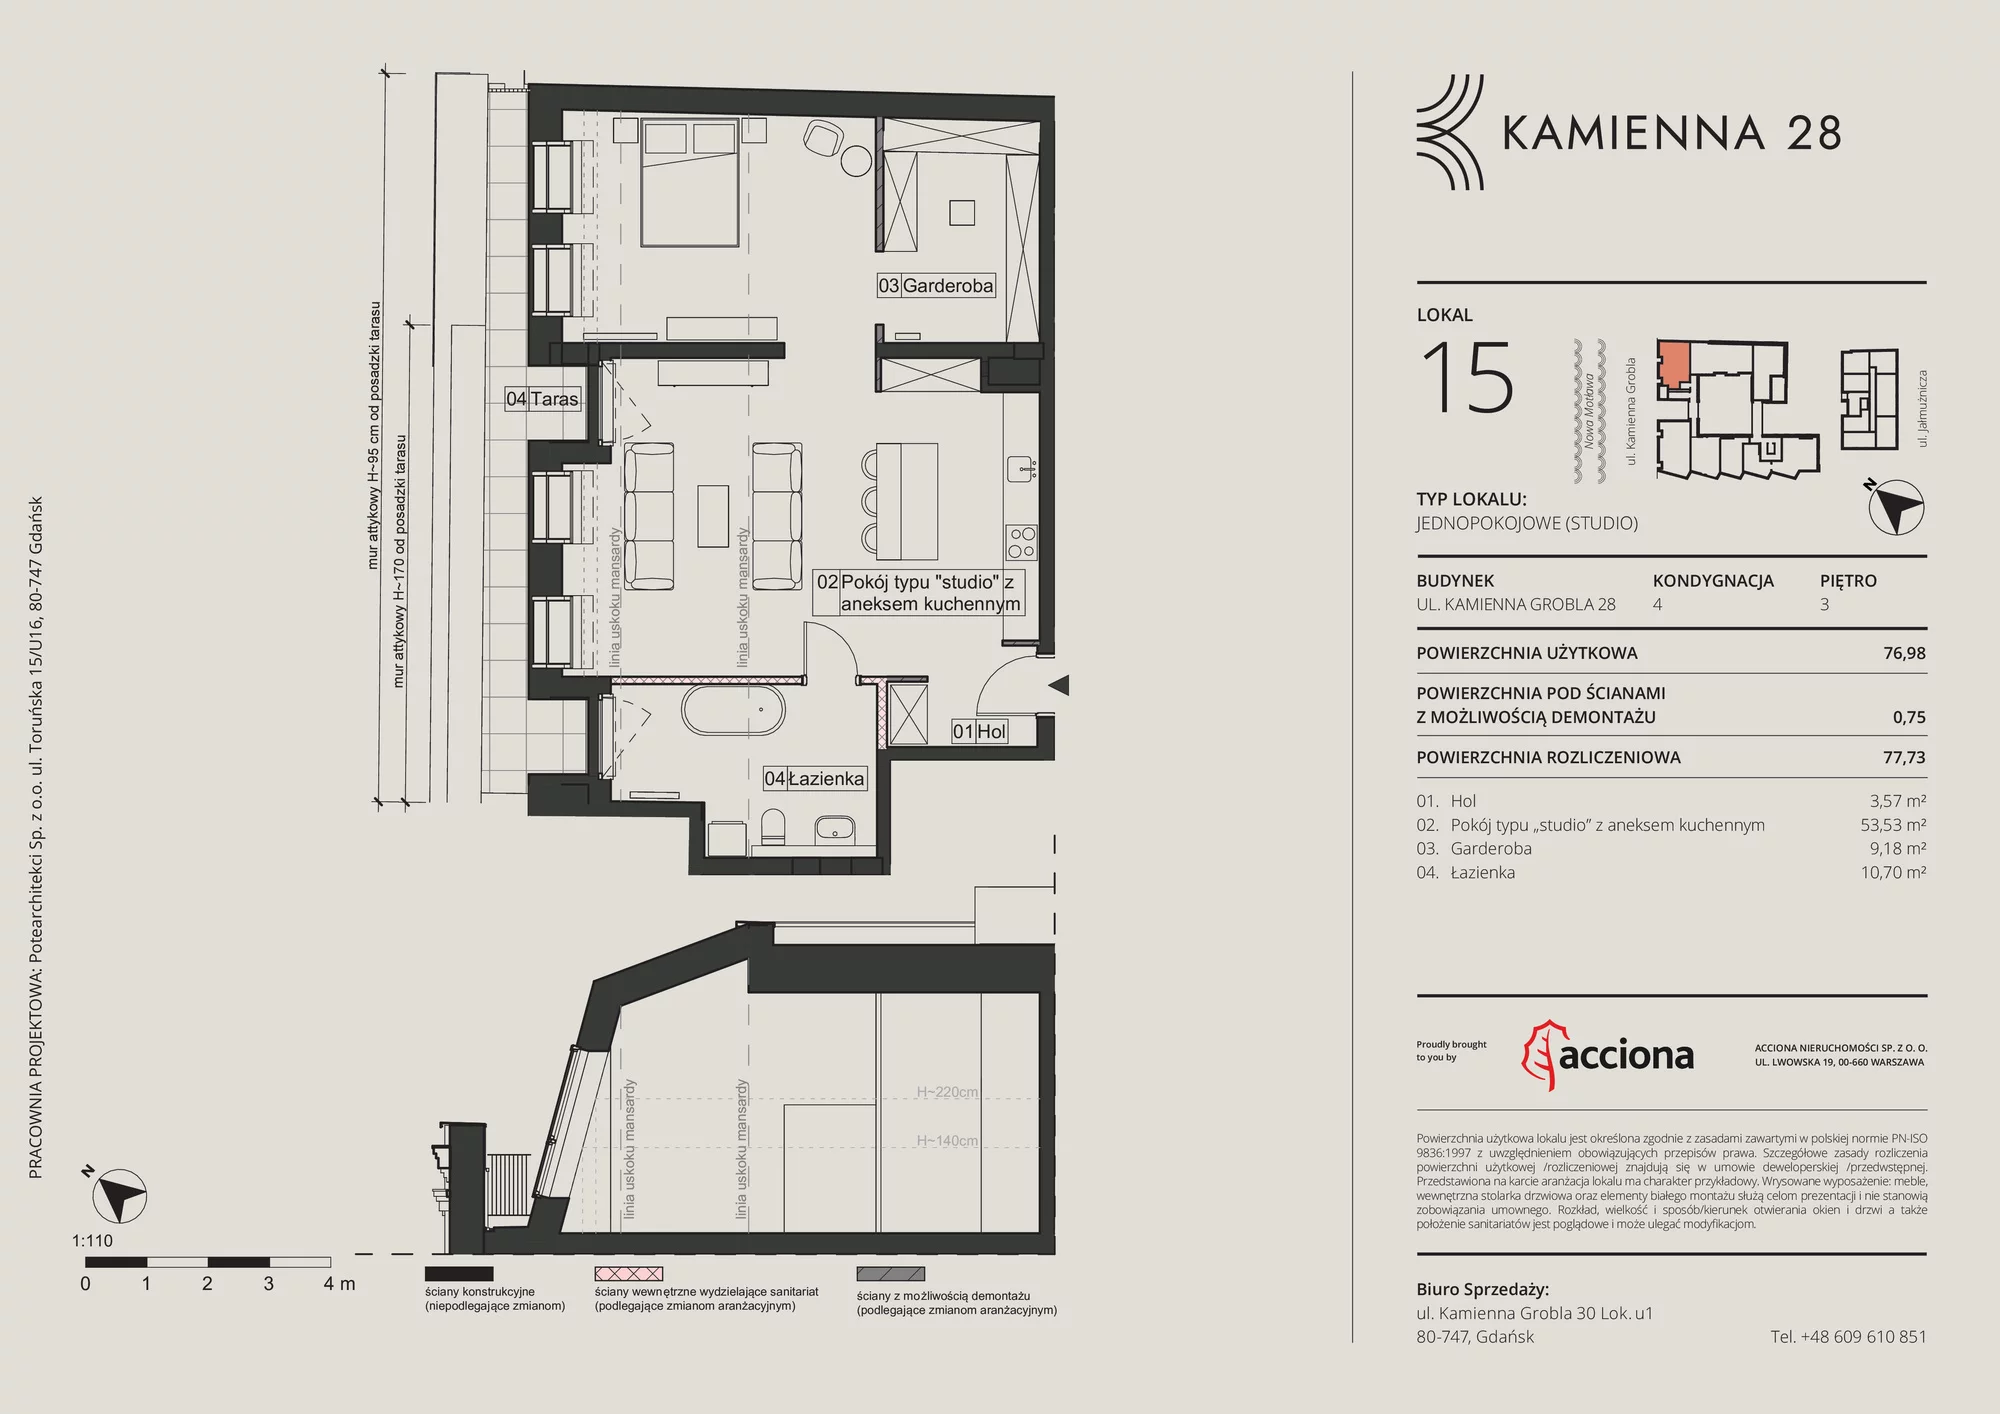 Apartament 77,73 m², piętro 3, oferta nr 28.15, Kamienna 28, Gdańsk, Śródmieście, Dolne Miasto, ul. Kamienna Grobla 28/29